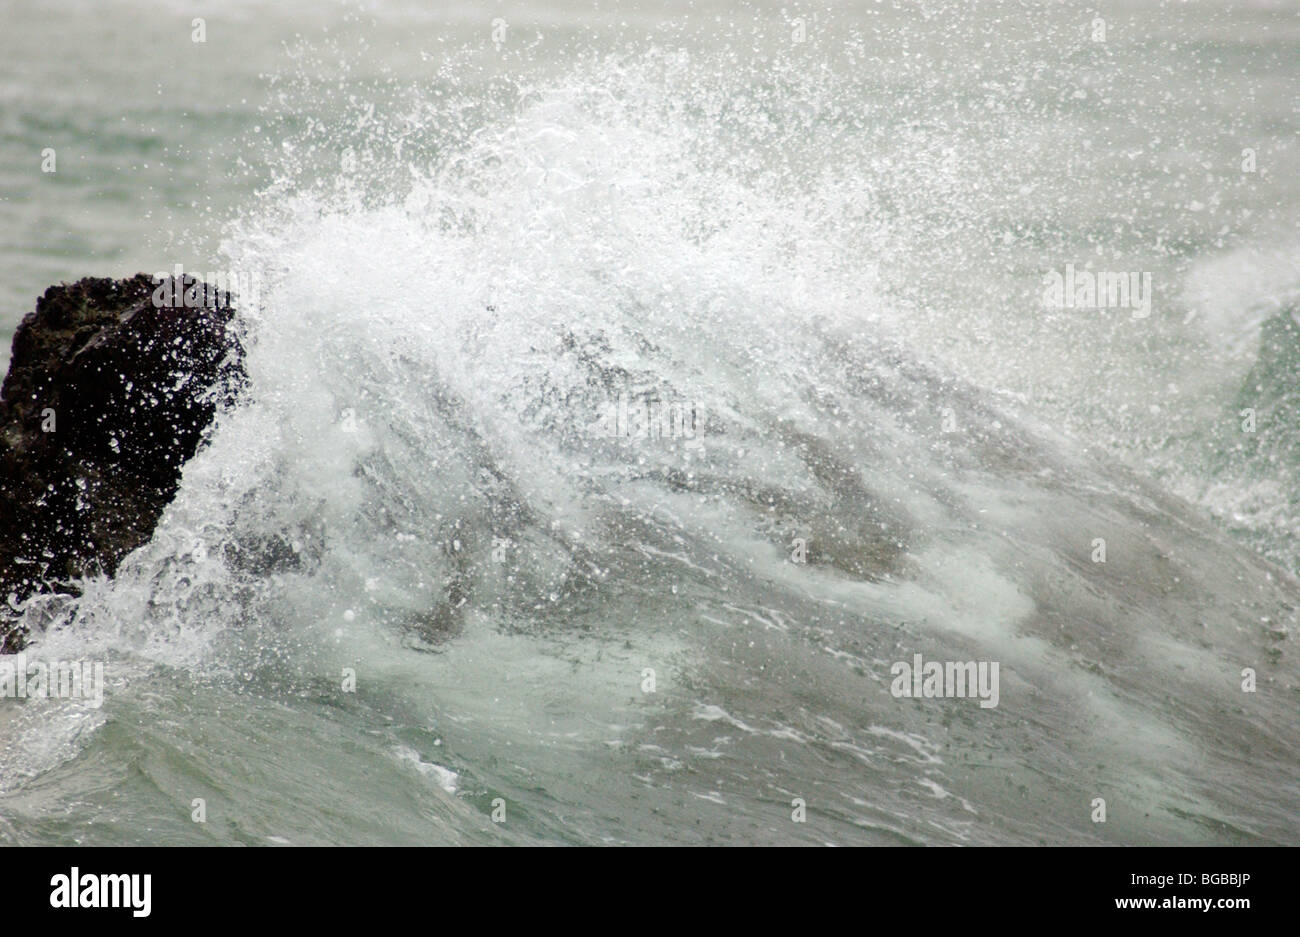 Image libre photo de tempête de vent avec mer agitée. Banque D'Images